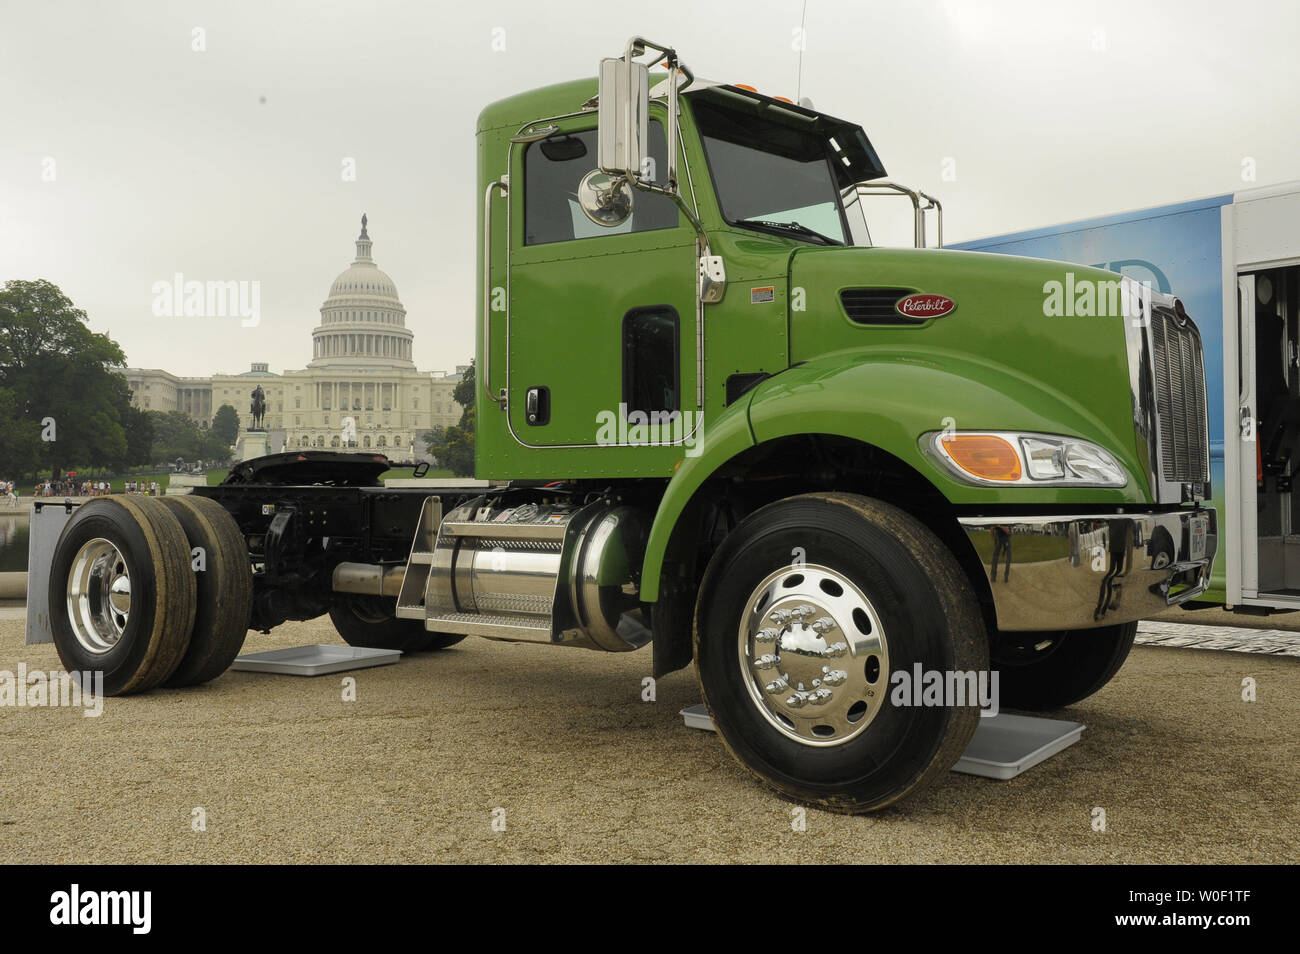 Un ibrido trattore camion con rimorchio è visto in una dimostrazione di " verde " veicoli commerciali nei pressi di Stati Uniti Campidoglio di Washington il 11 giugno 2009. Foto Stock